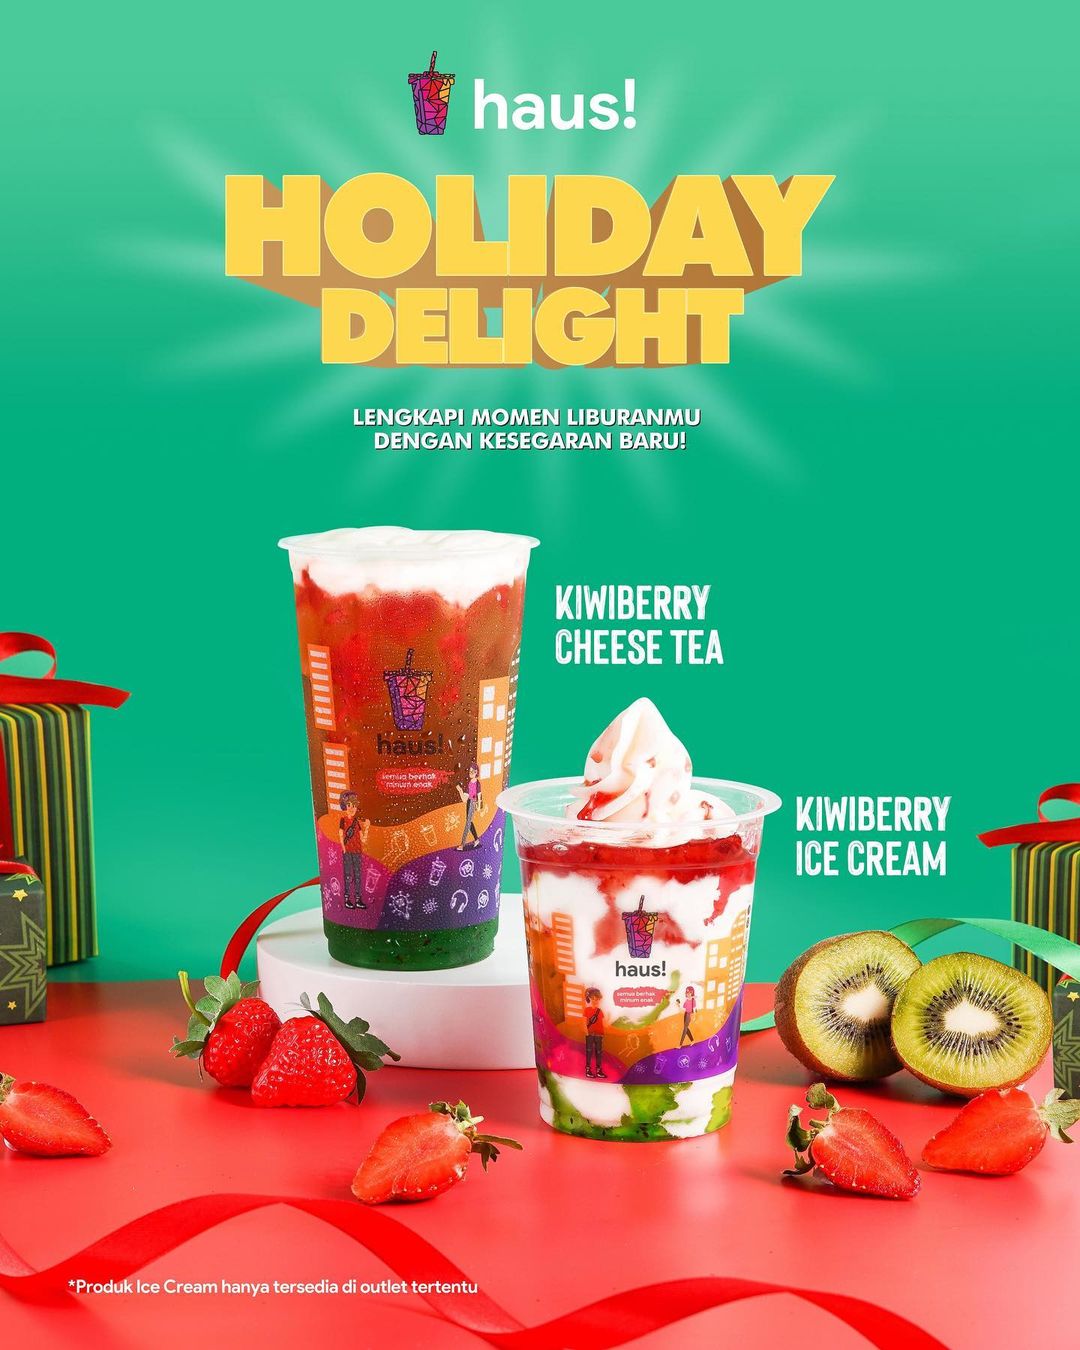 Promo HAUS! MENU BARU HOLIDAY DELIGHT - Paket BUNDLING Cheese Tea + Ice Cream cuma Rp. 35.000 berlaku sd. tanggal 24 Desember 2021